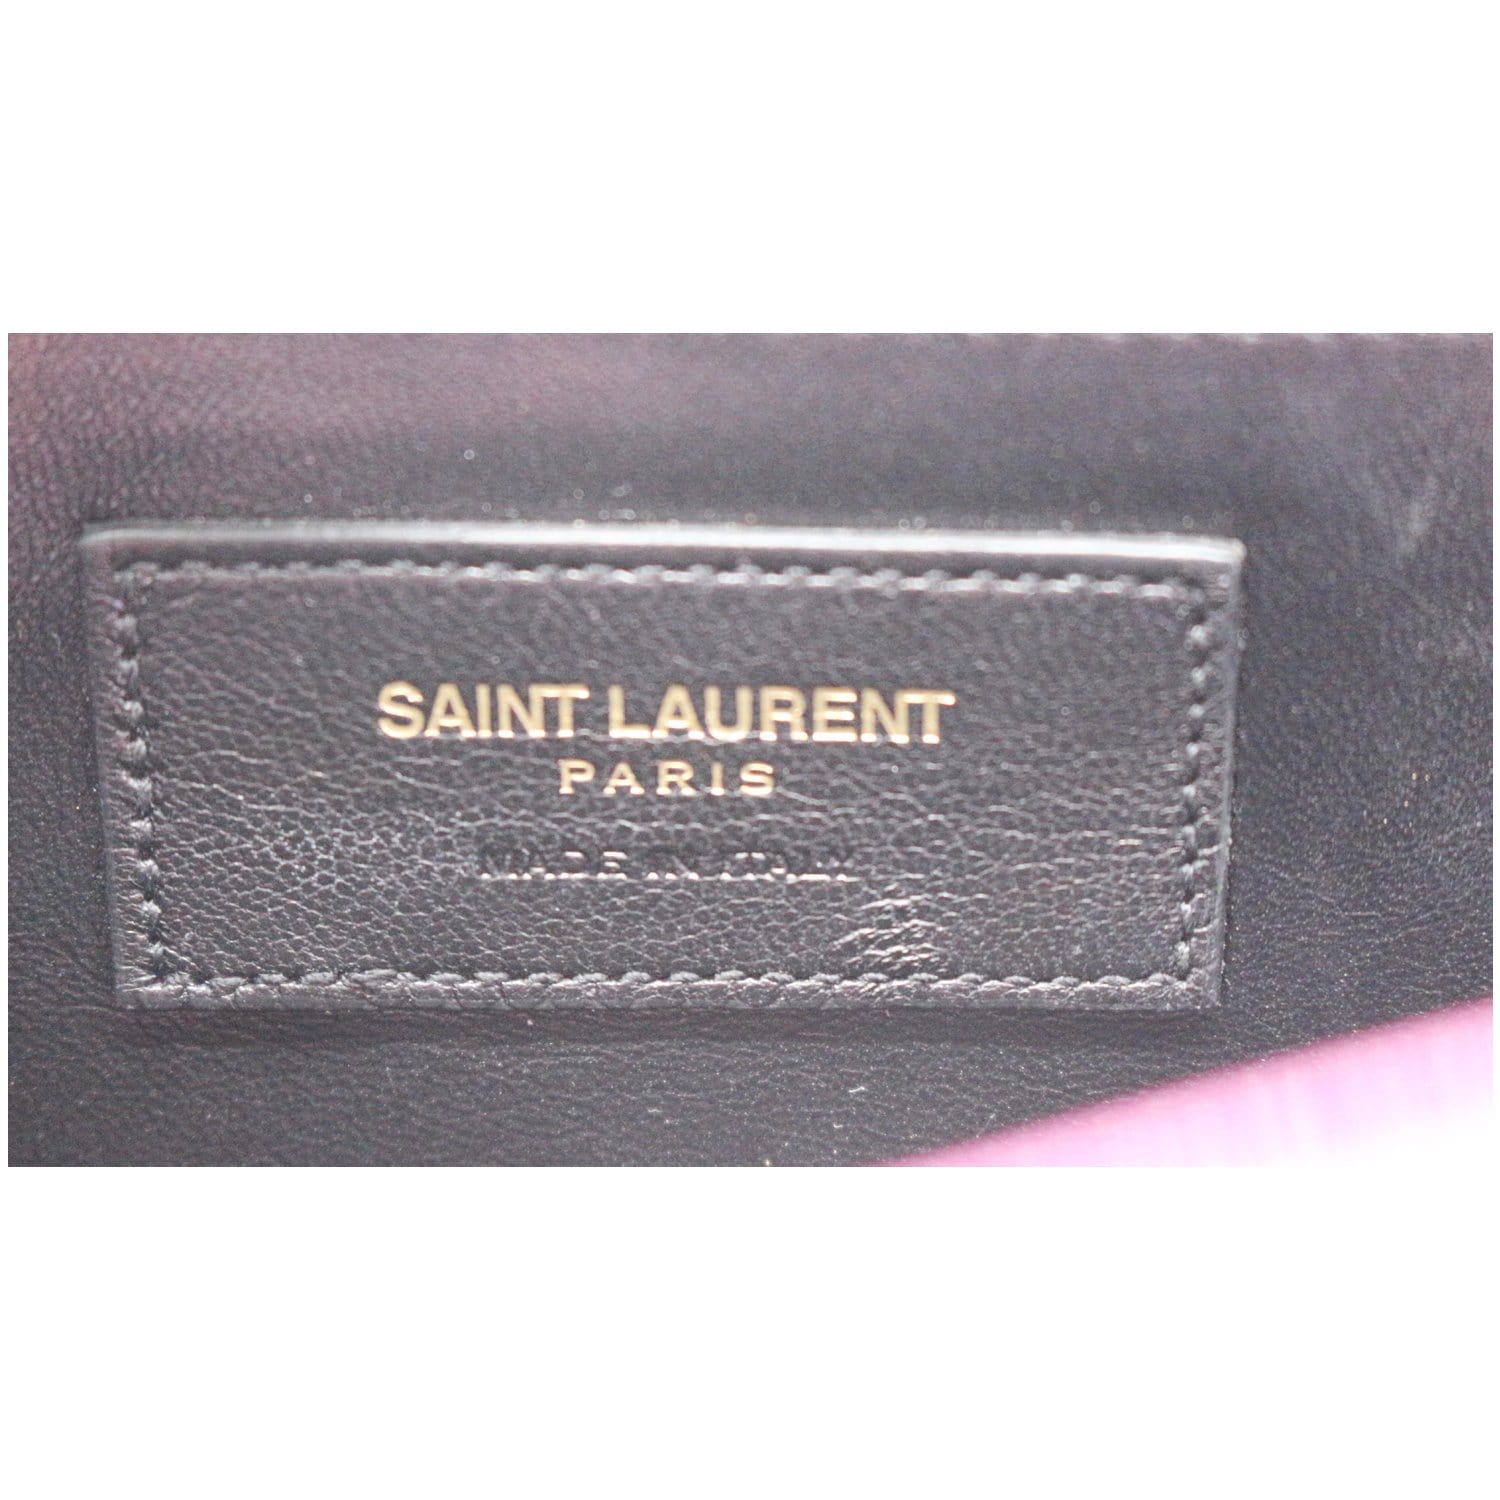 Yves Saint Laurent Belle De Jour Patent Leather Clutch Bag Beige